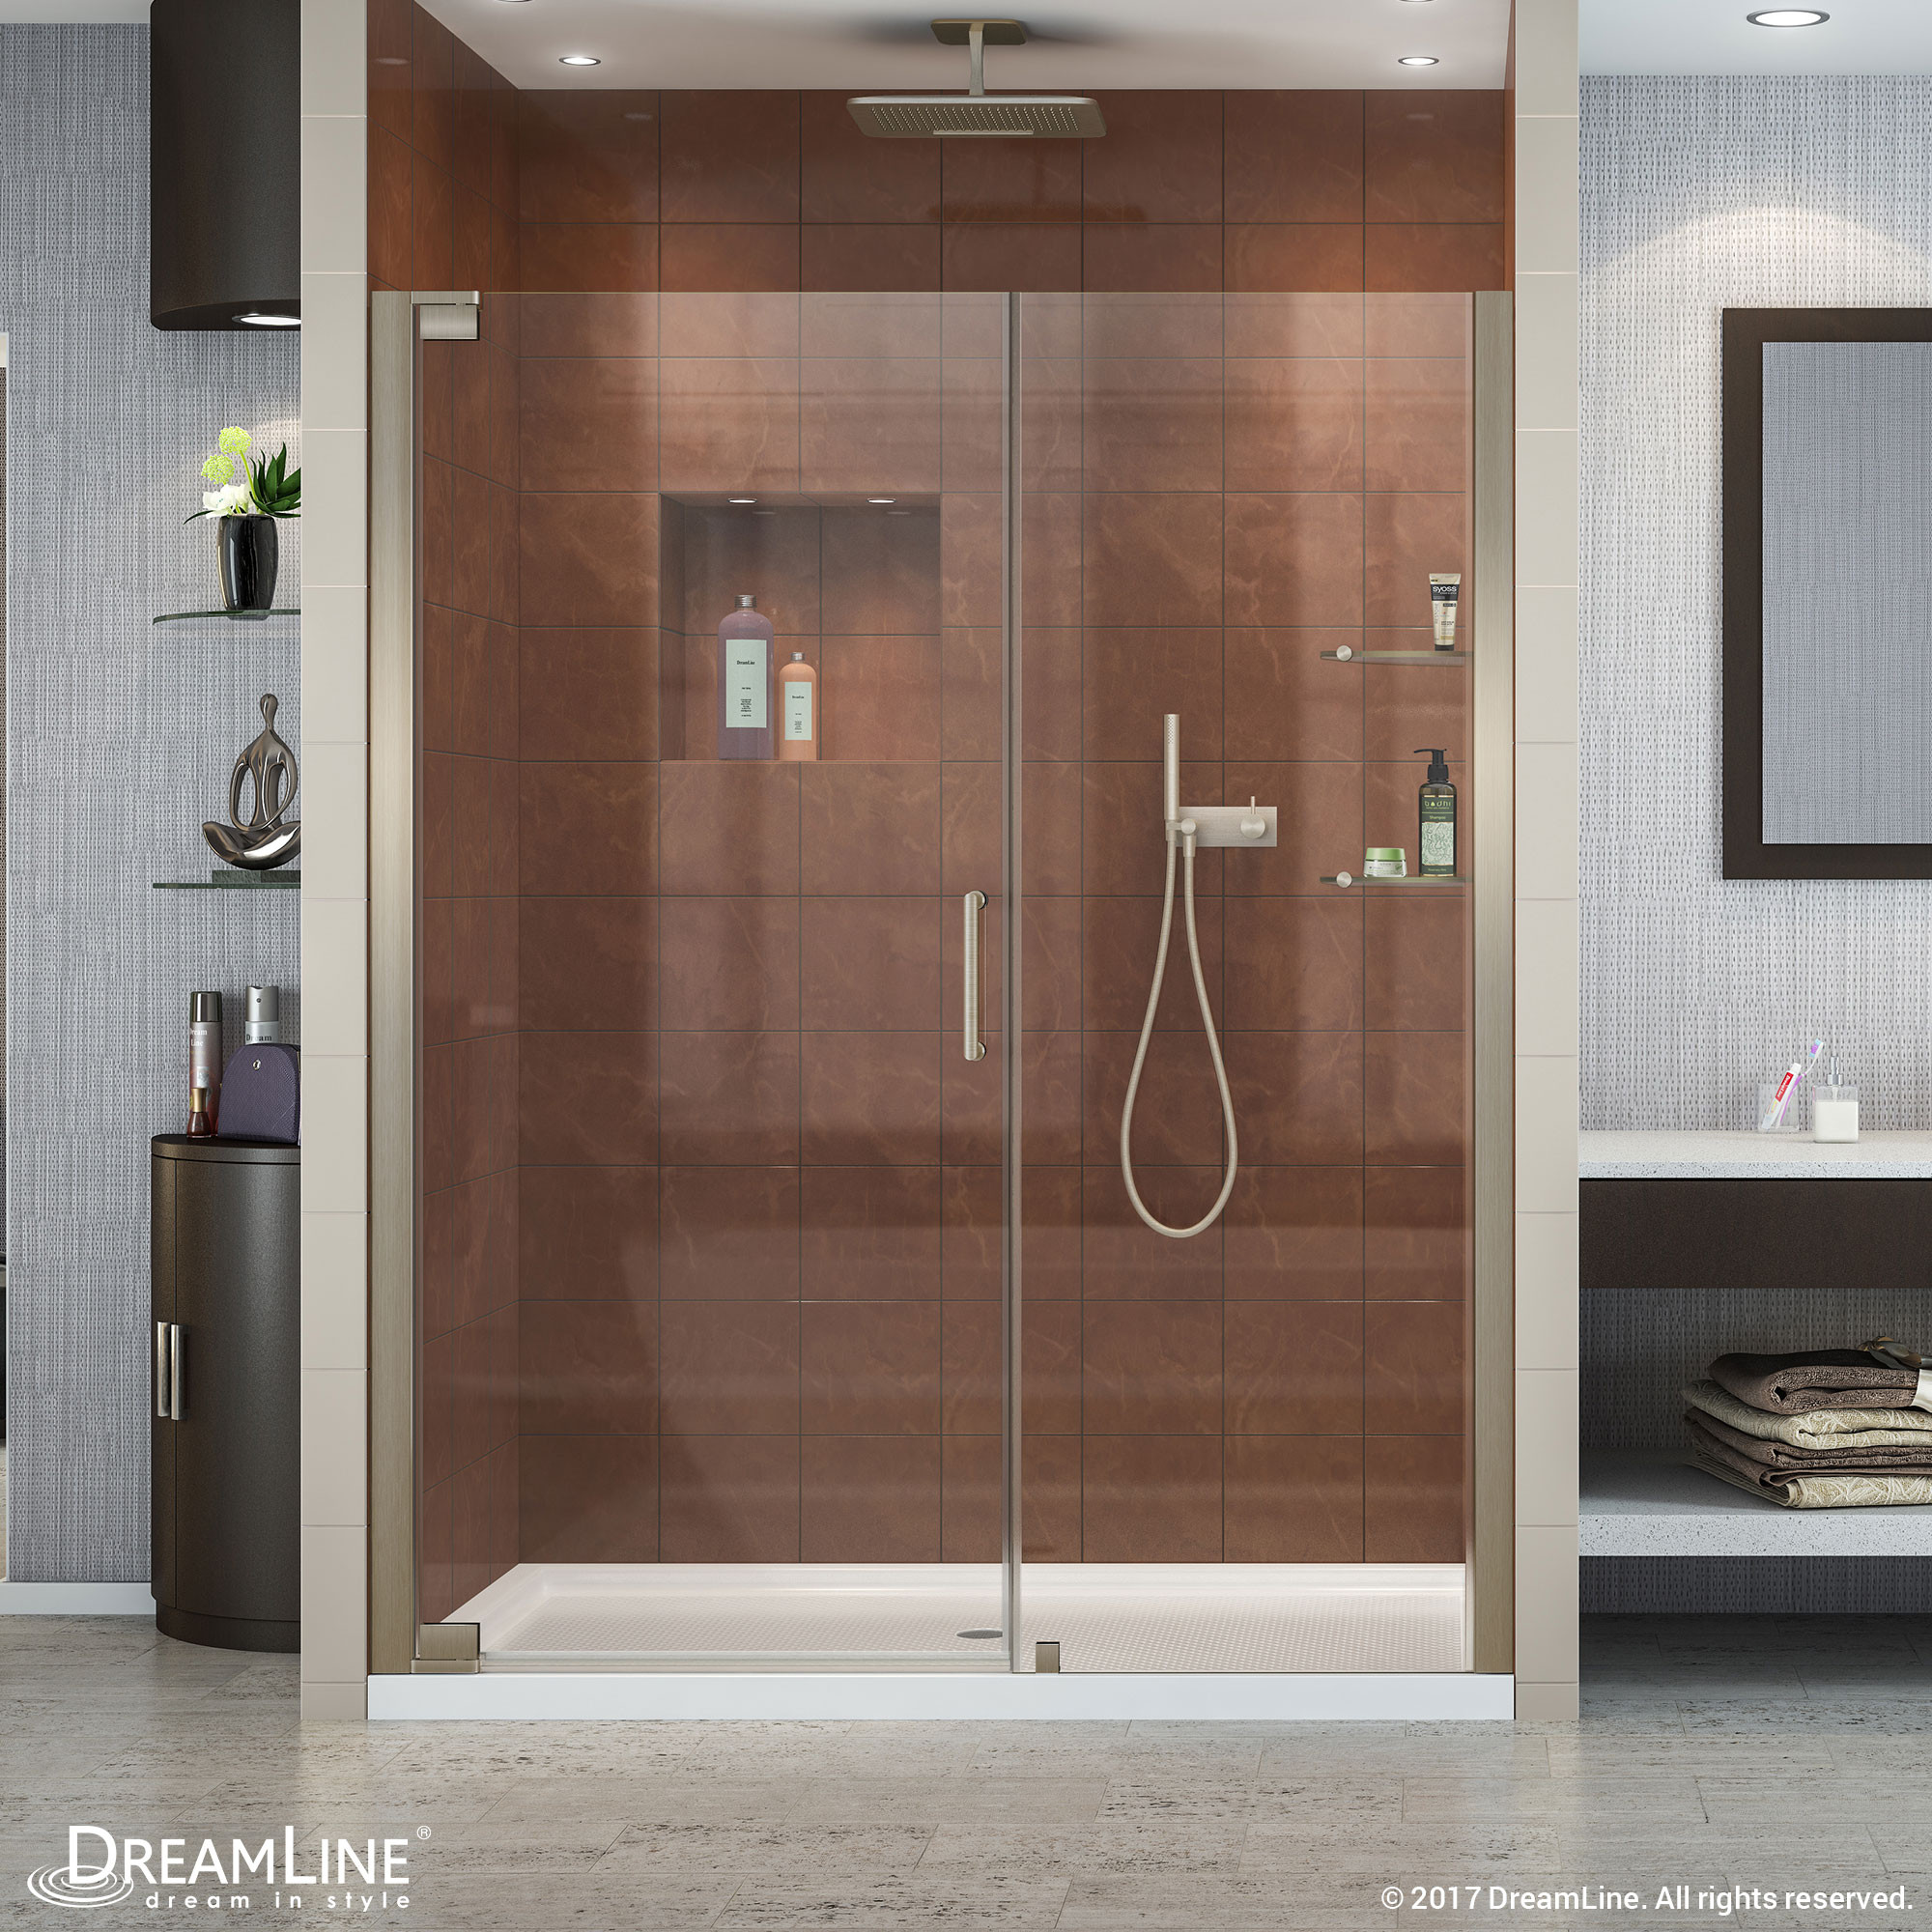 Dreamline SHDR-4154720-04 Brushed Nickel Elegance 54 1/2 to 56 1/2" Shower Door